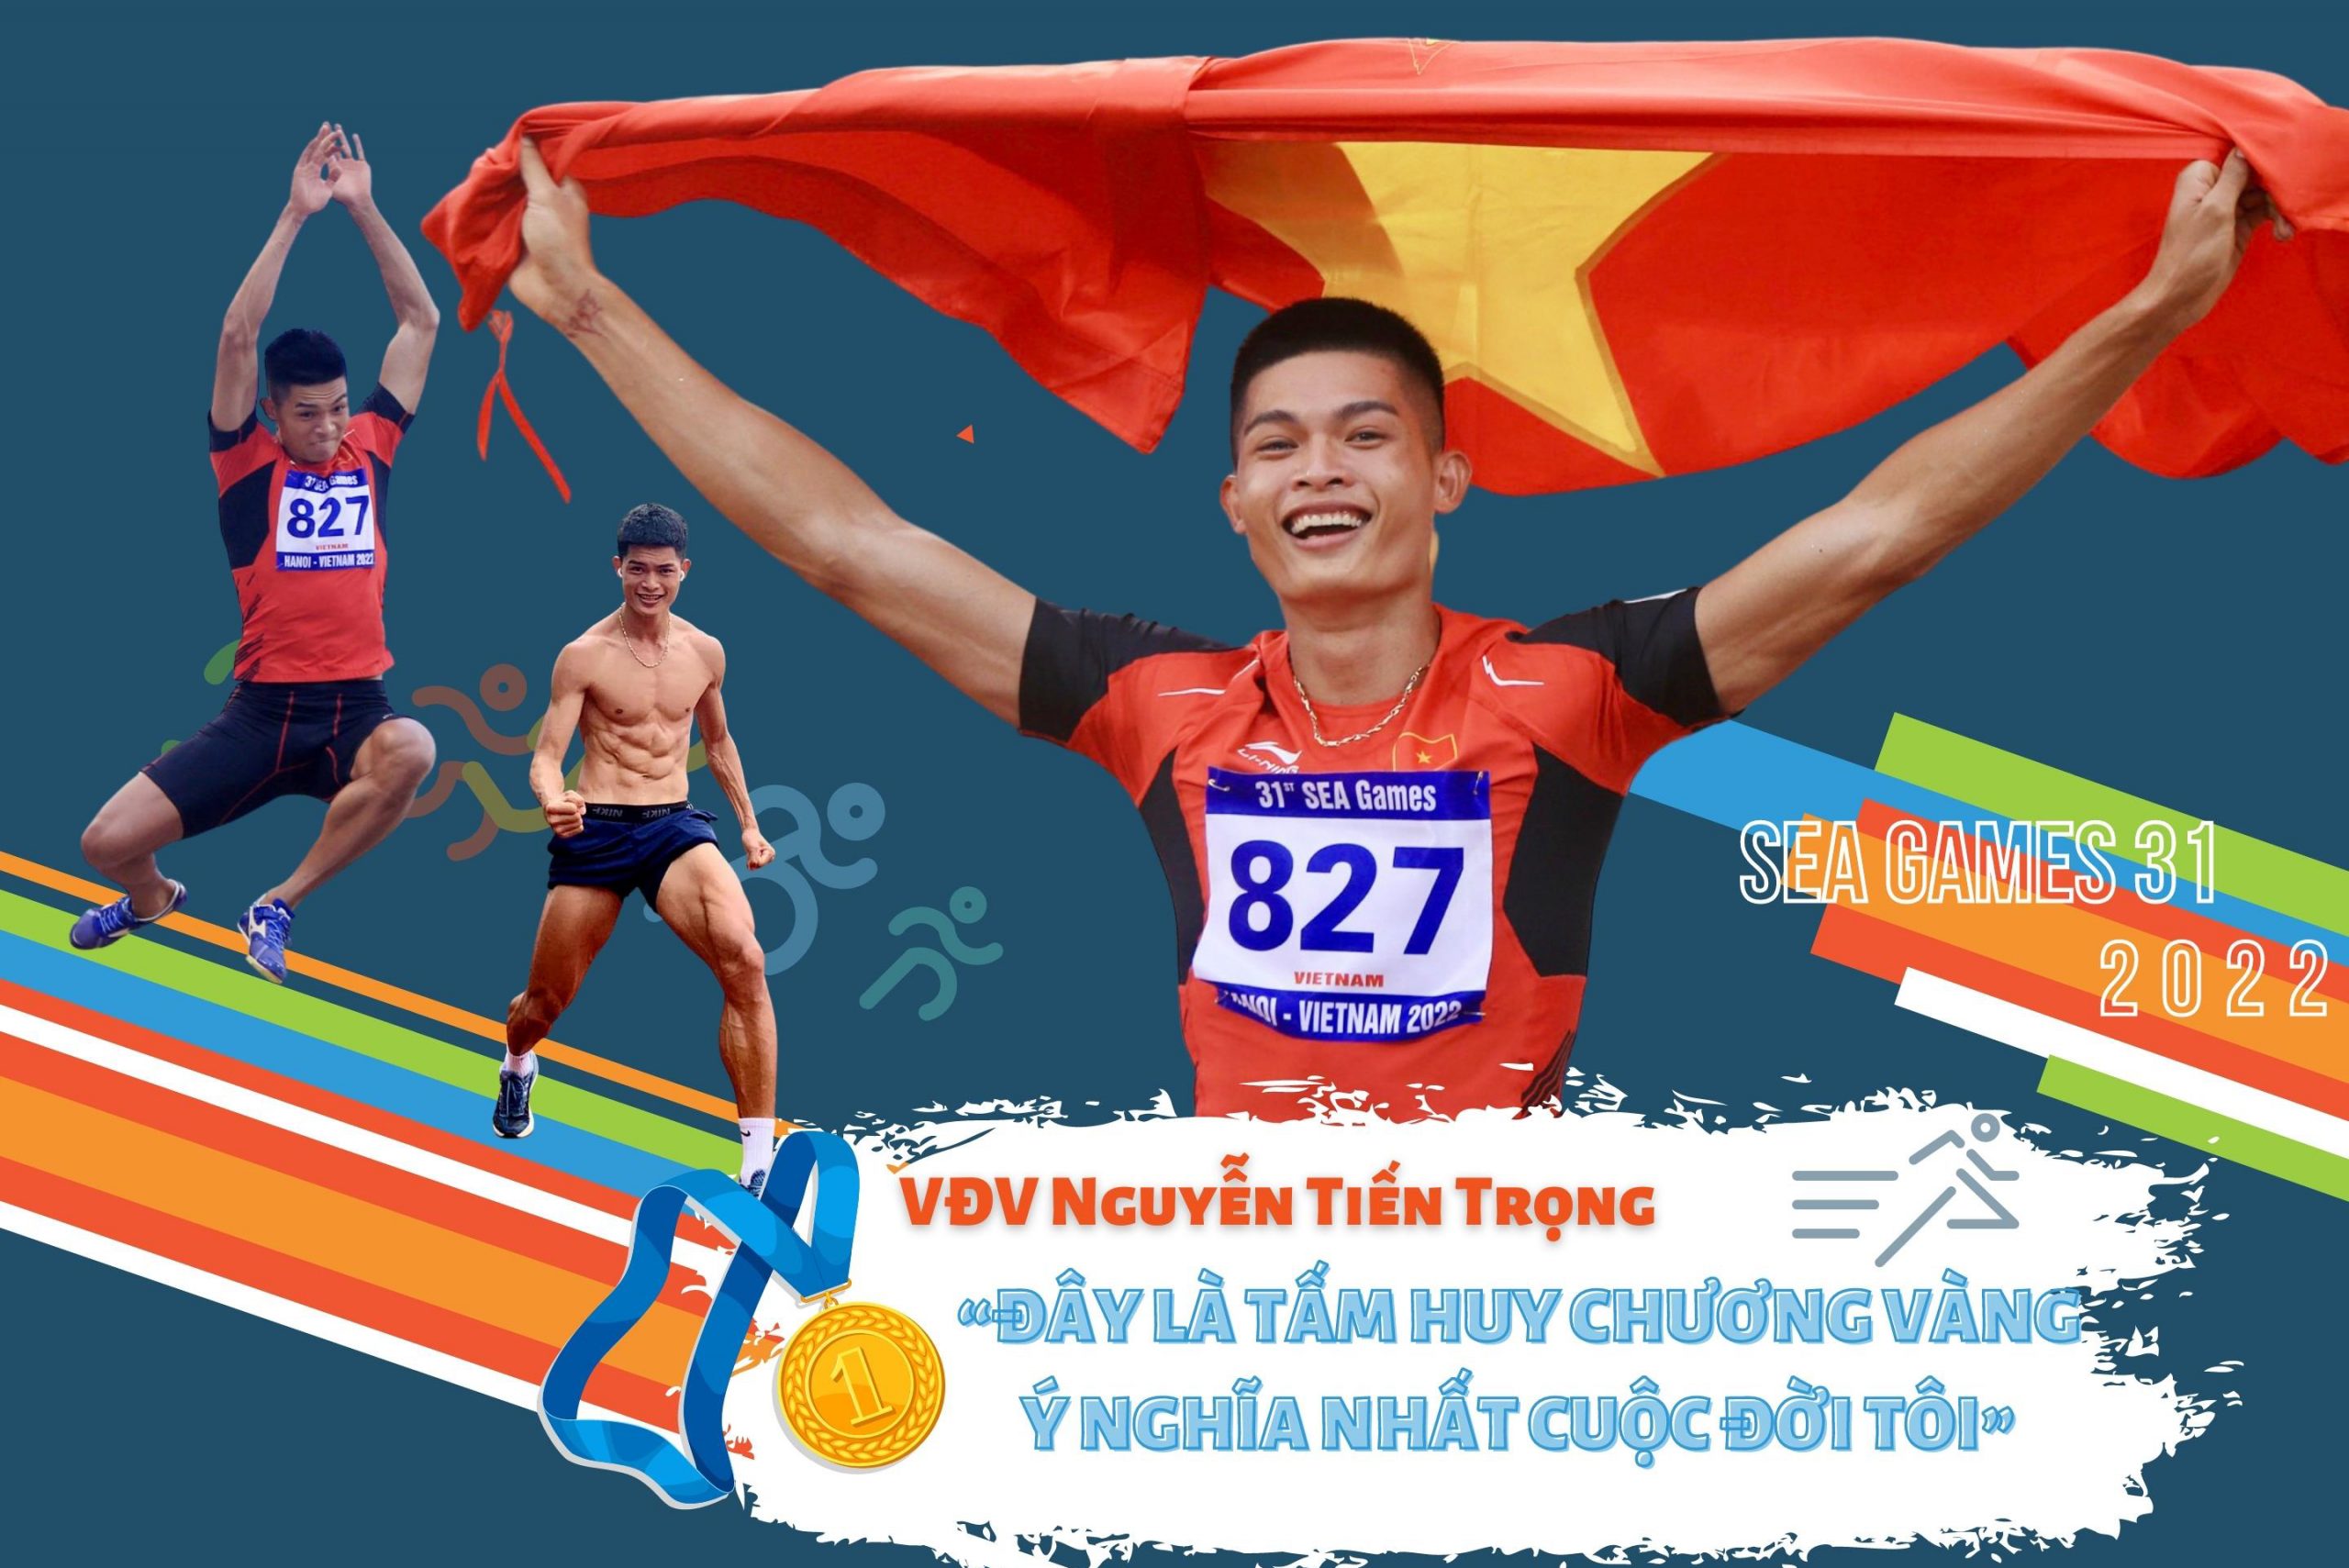 Đằng sau vinh quang của VĐV Nguyễn Tiến Trọng - Người xuất sắc đoạt HCV tại SEA Games 31!